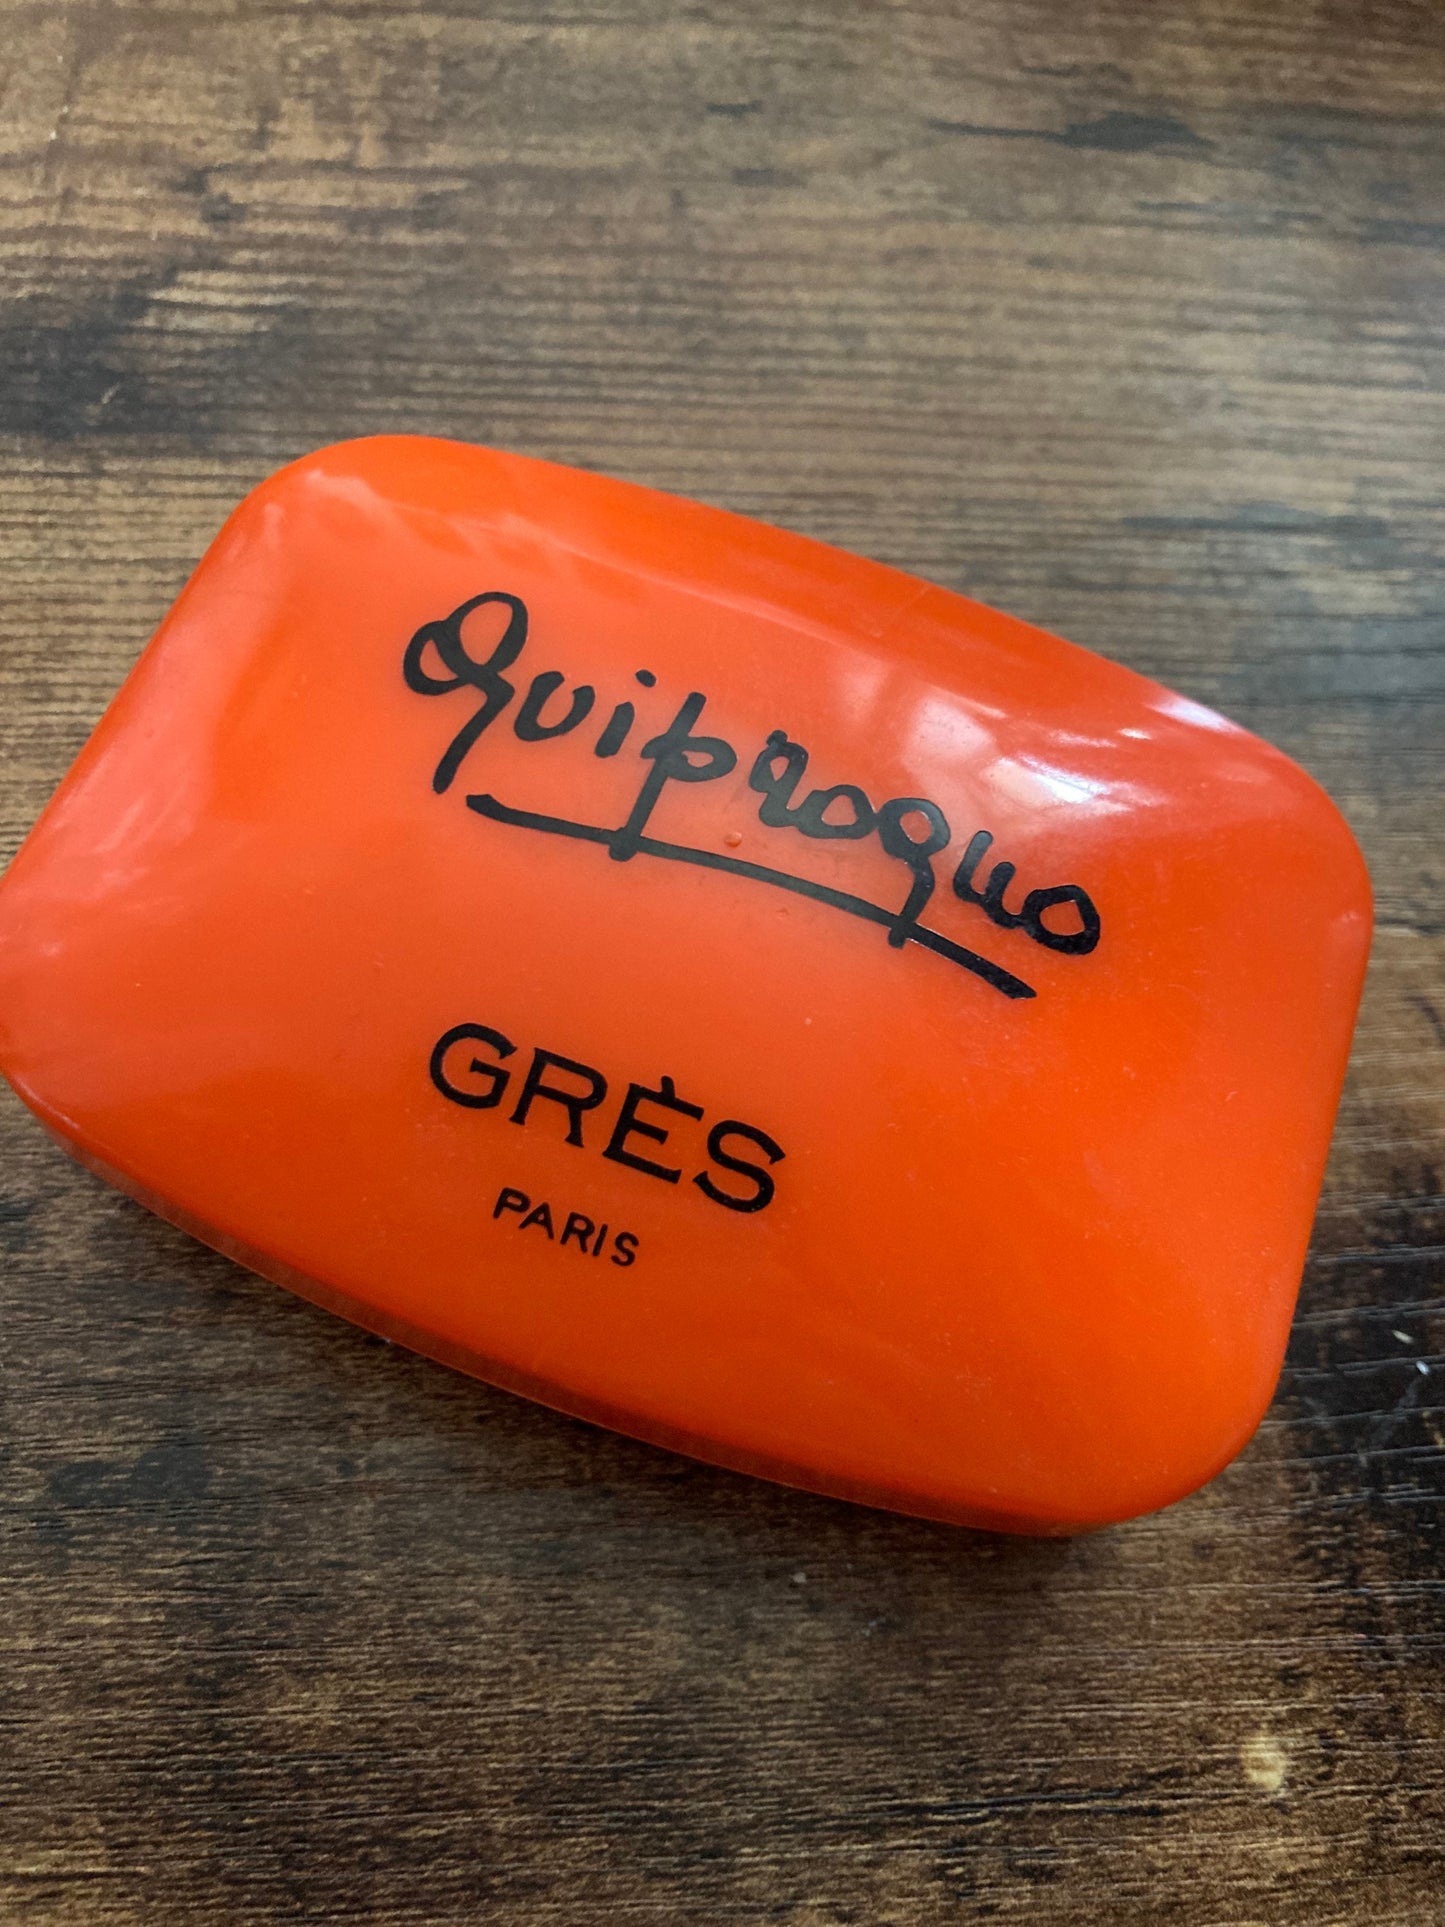 Quiproquo GRES Paris wrapped unused soap in red plastic case vintage cosmetics